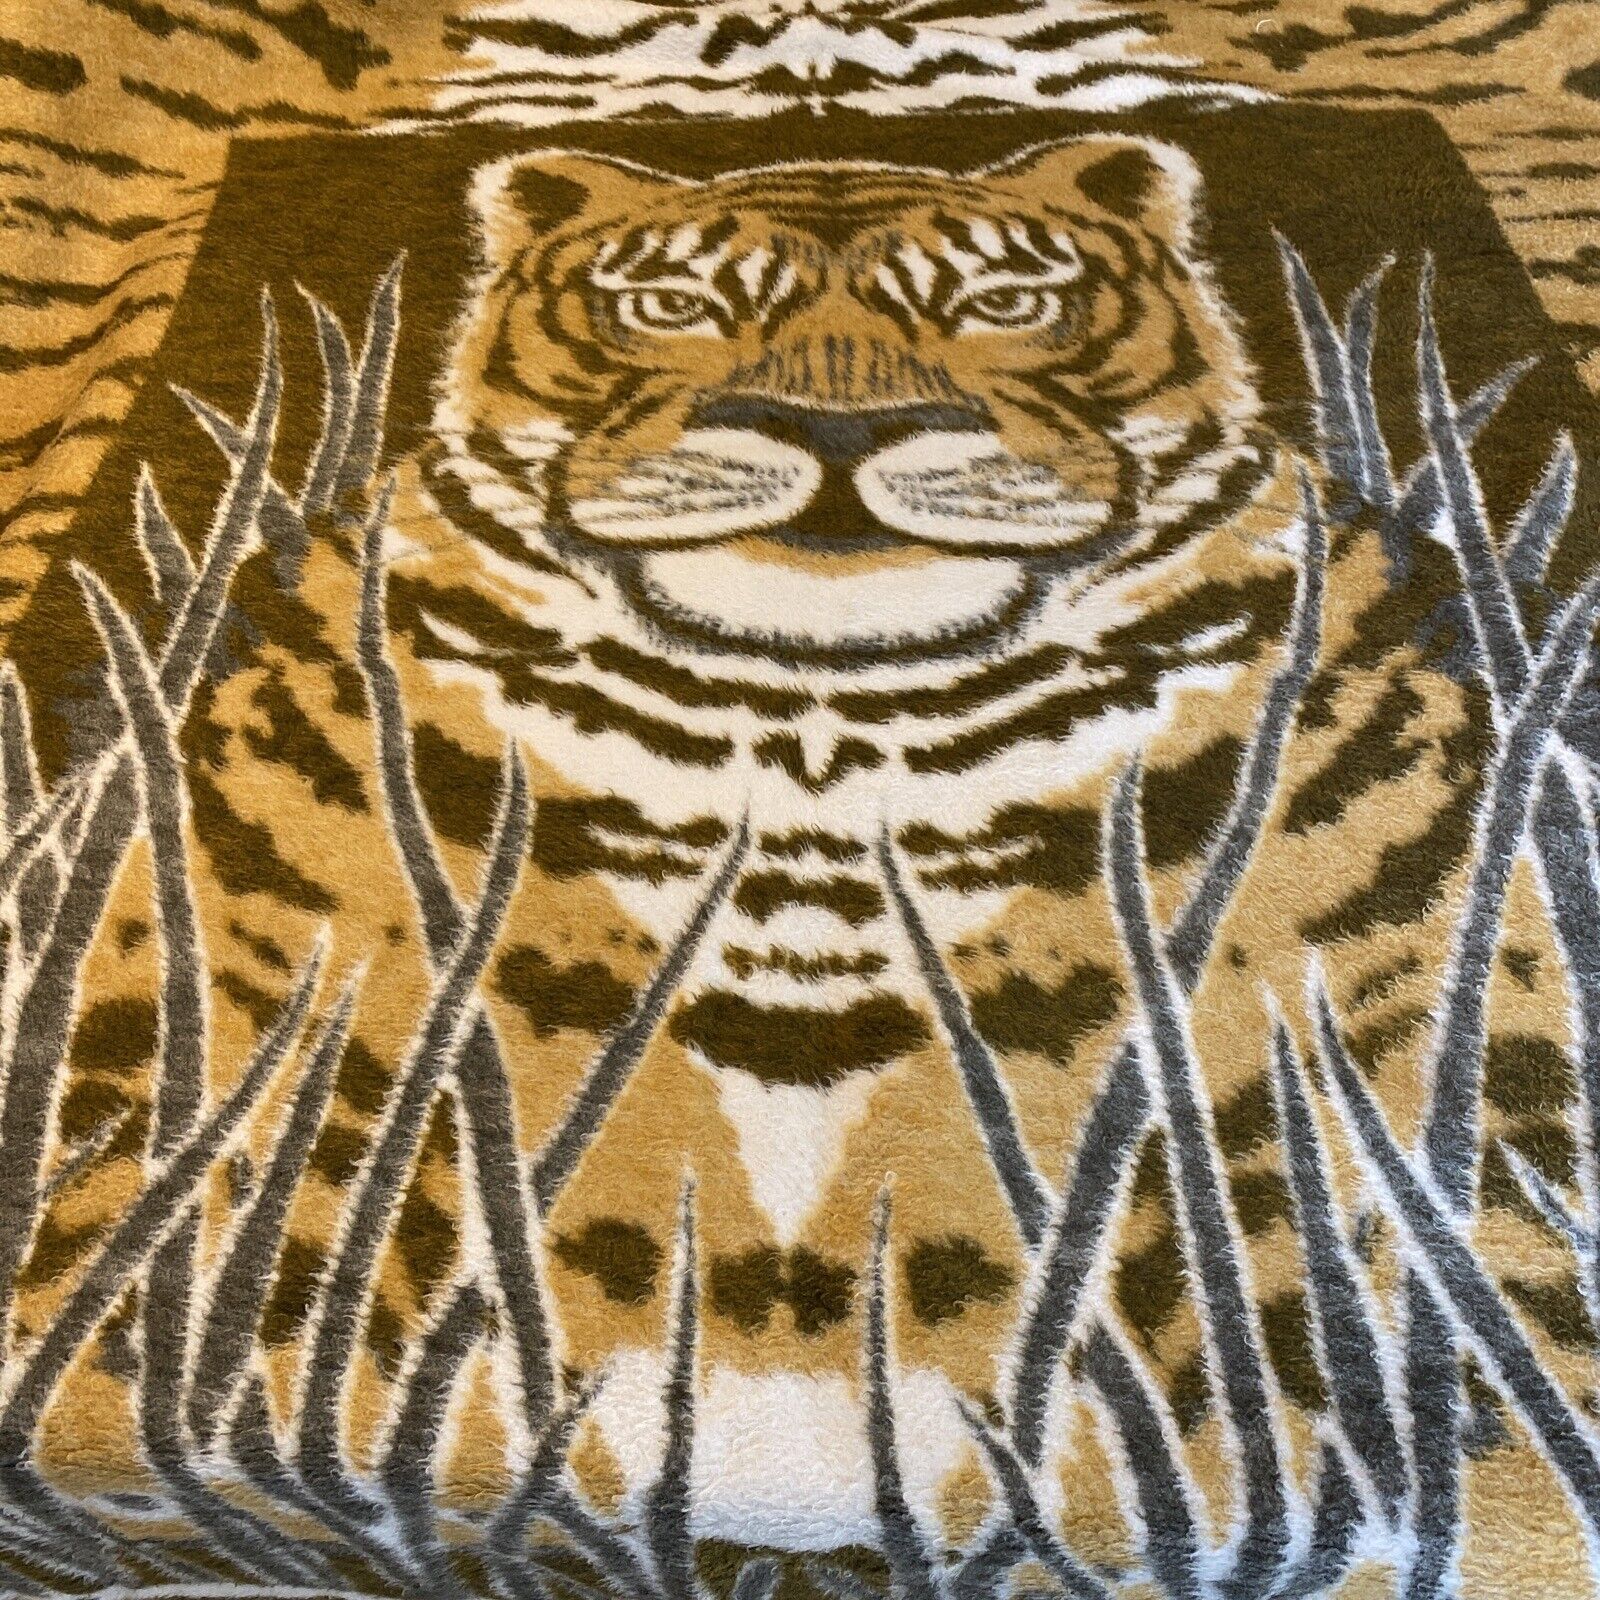 Vtg Chatham Tiger Blanket 61”x75” Acrylic Soft Reversible